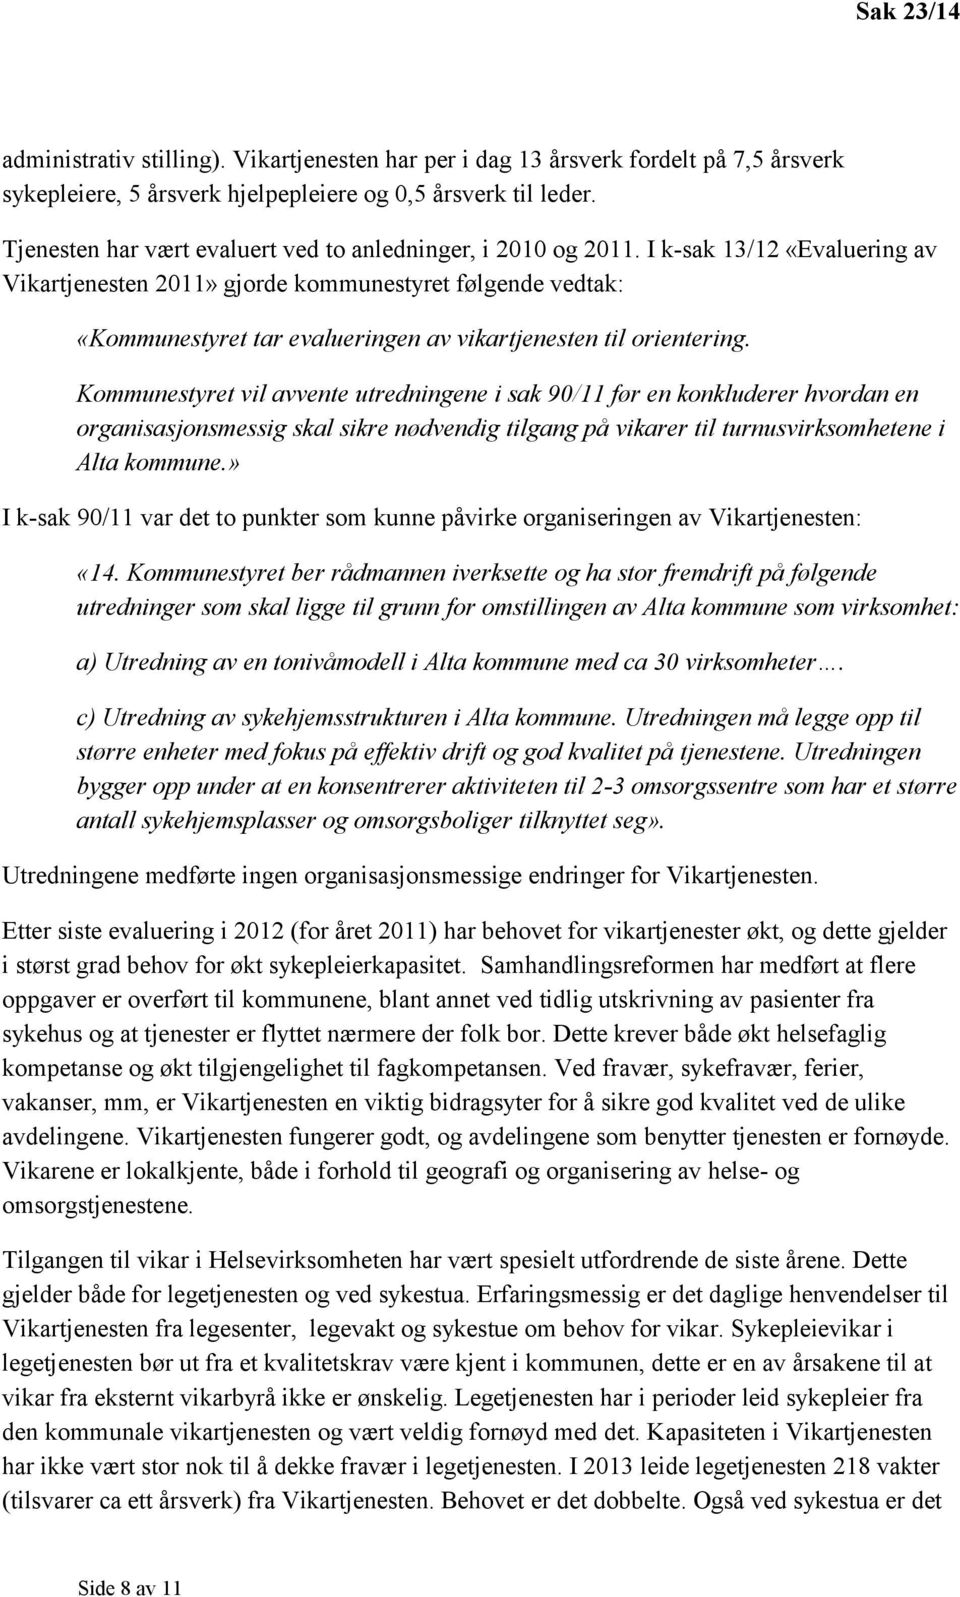 I k-sak 13/12 «Evaluering av Vikartjenesten 2011» gjorde kommunestyret følgende vedtak: «Kommunestyret tar evalueringen av vikartjenesten til orientering.